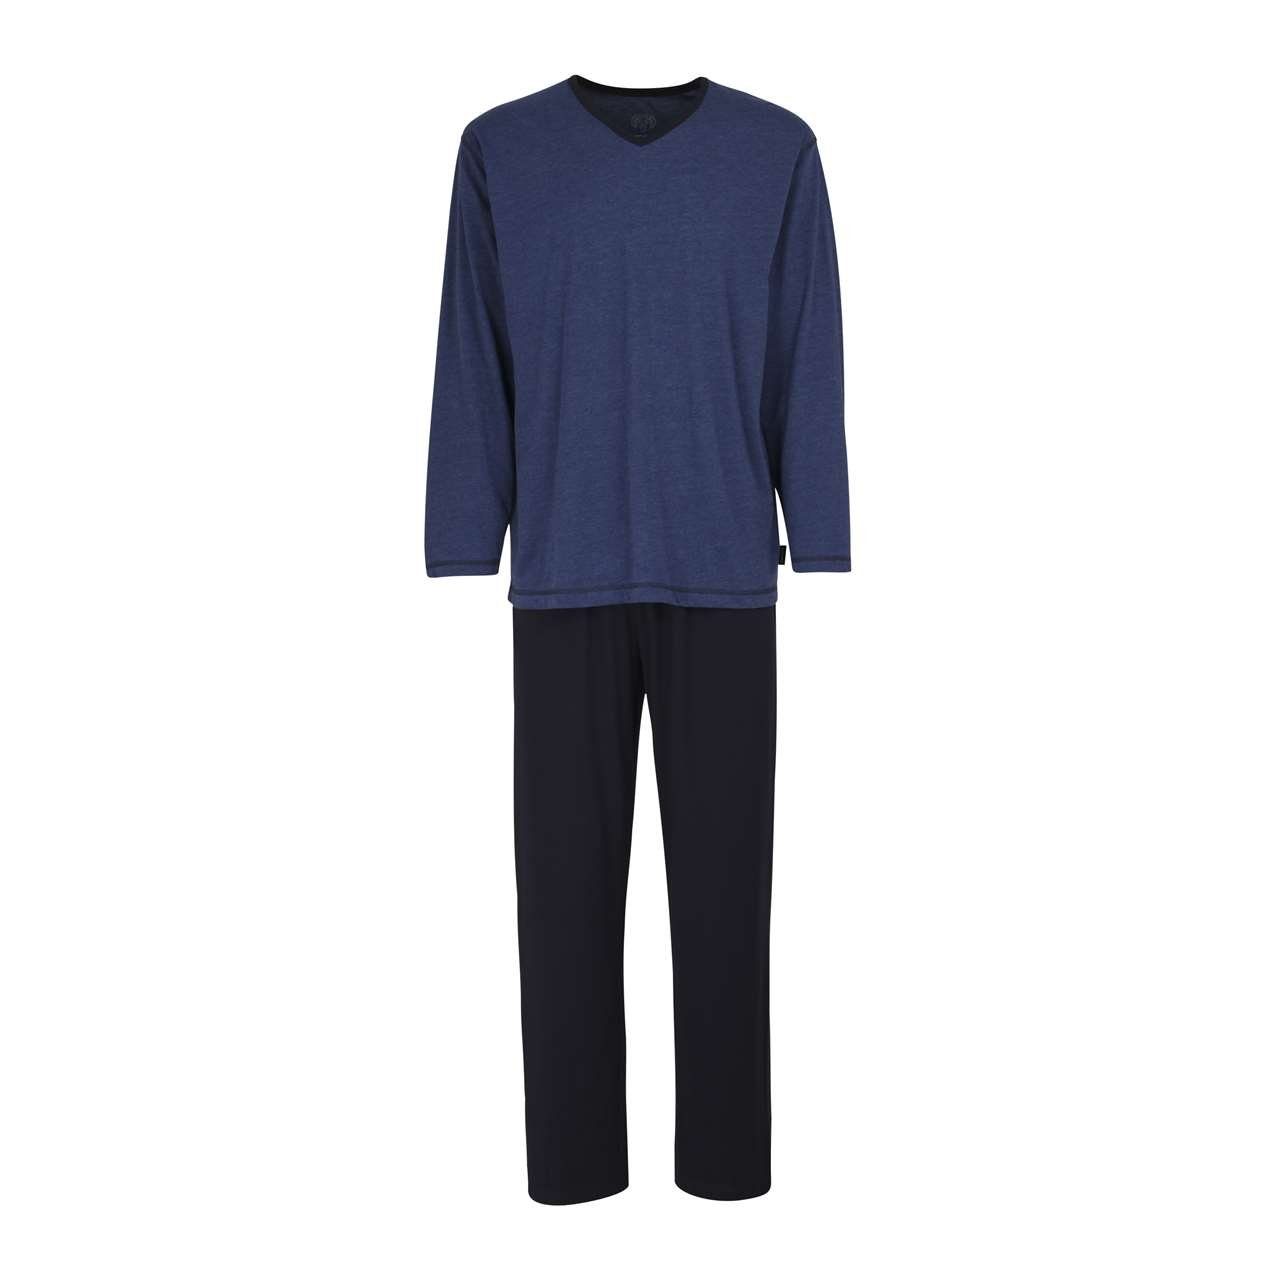 CECEBA Pyjama Klima Aktiv langer Herren Schlafanzug auch in Langgrößen blau-dunkel-melange (631)